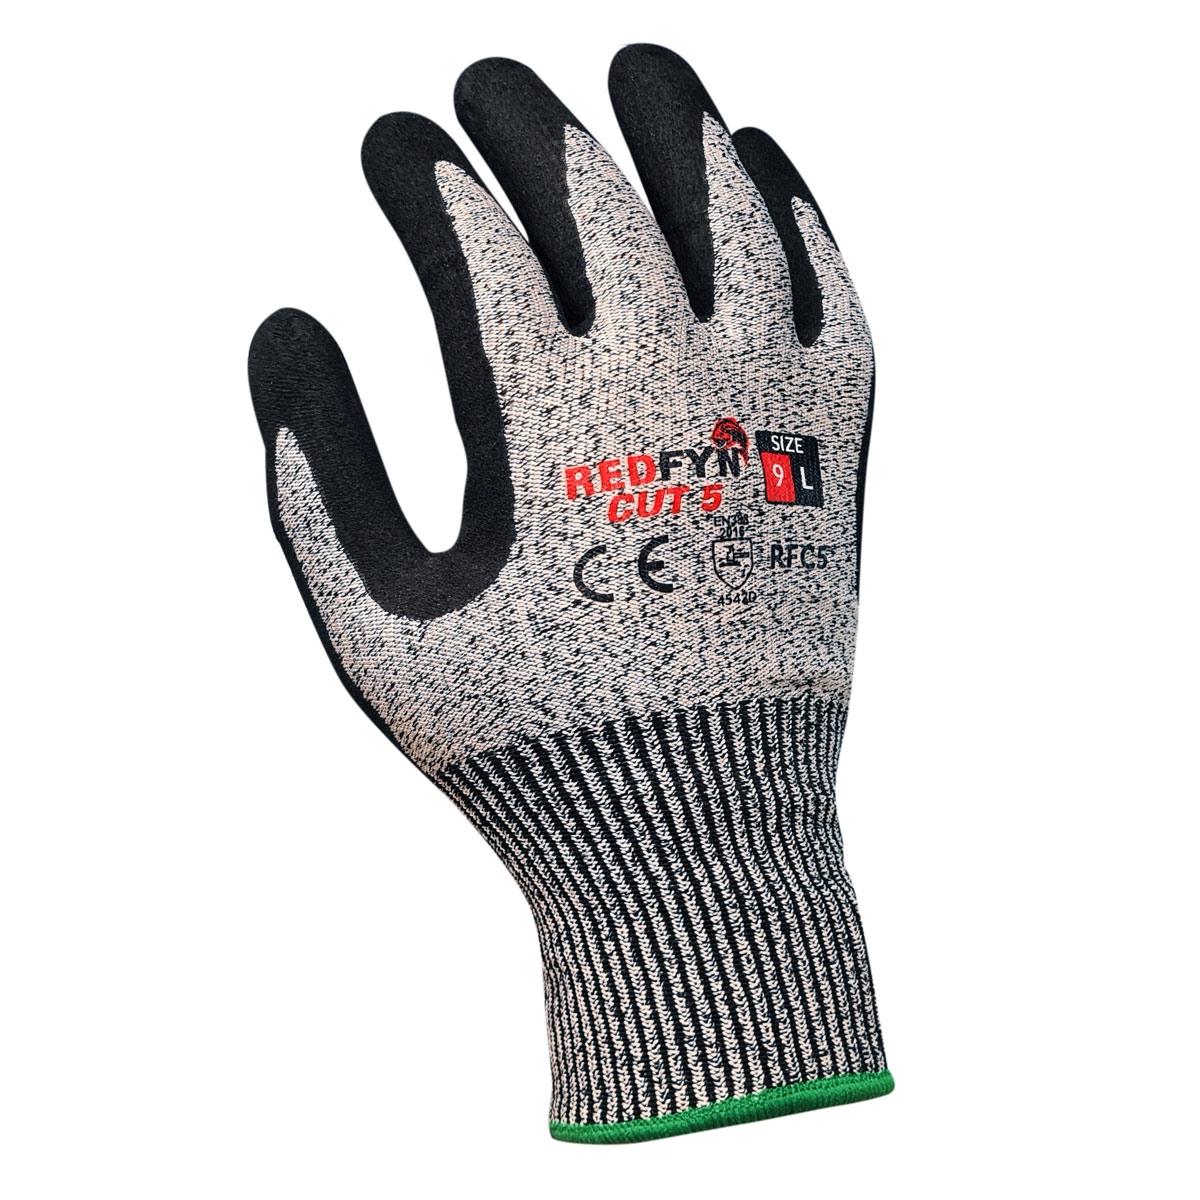 Redfyn Cut 5 Gloves